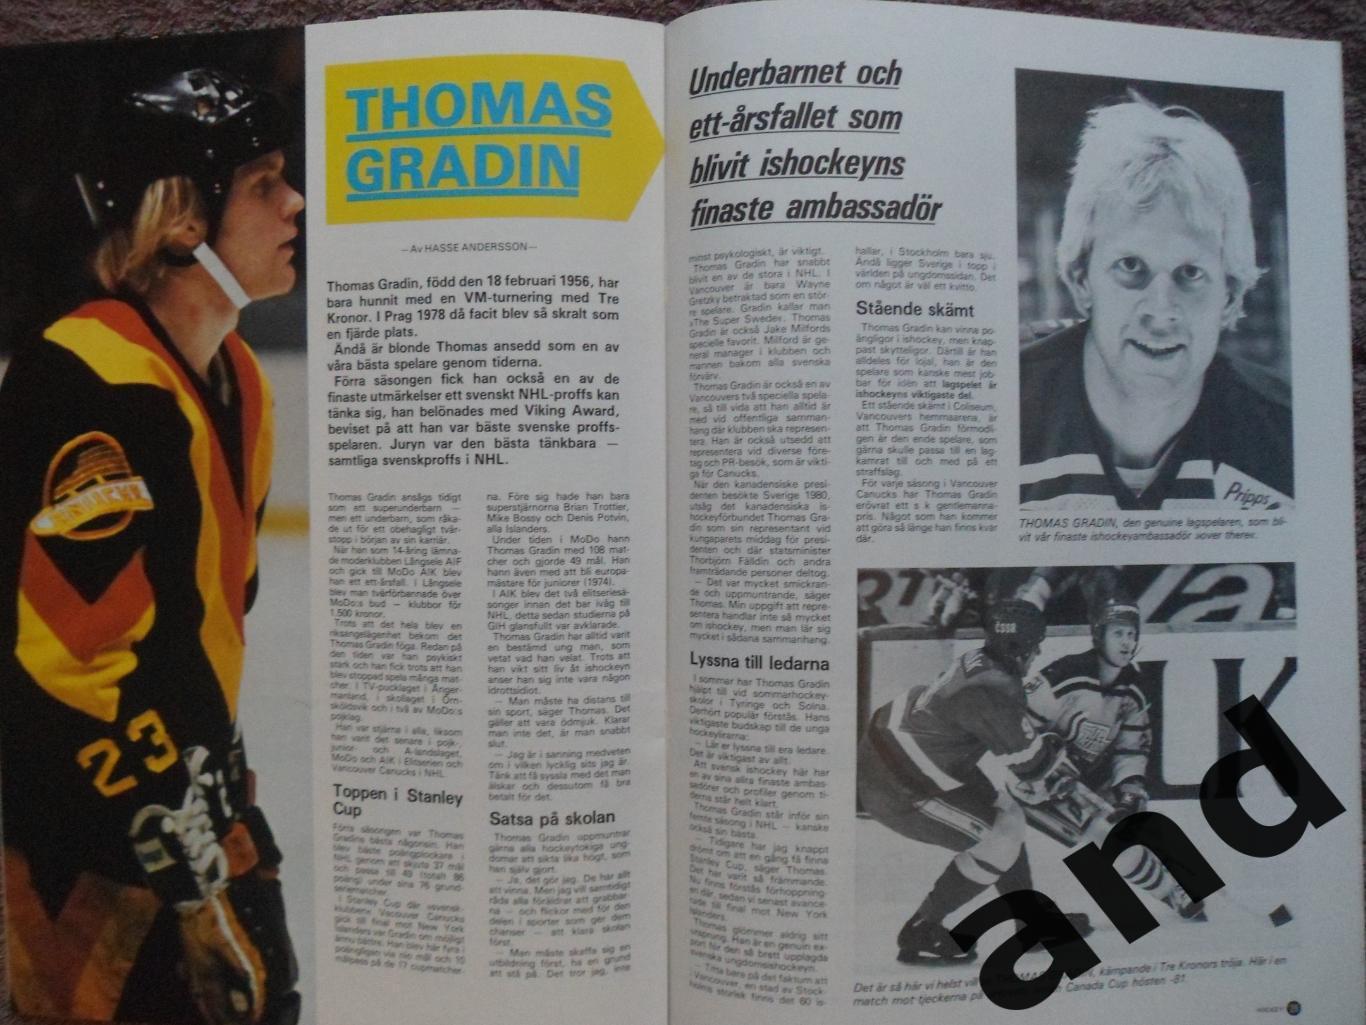 журнал Хоккей (Швеция) № 7 (1982) большой постер Эрикссон 3